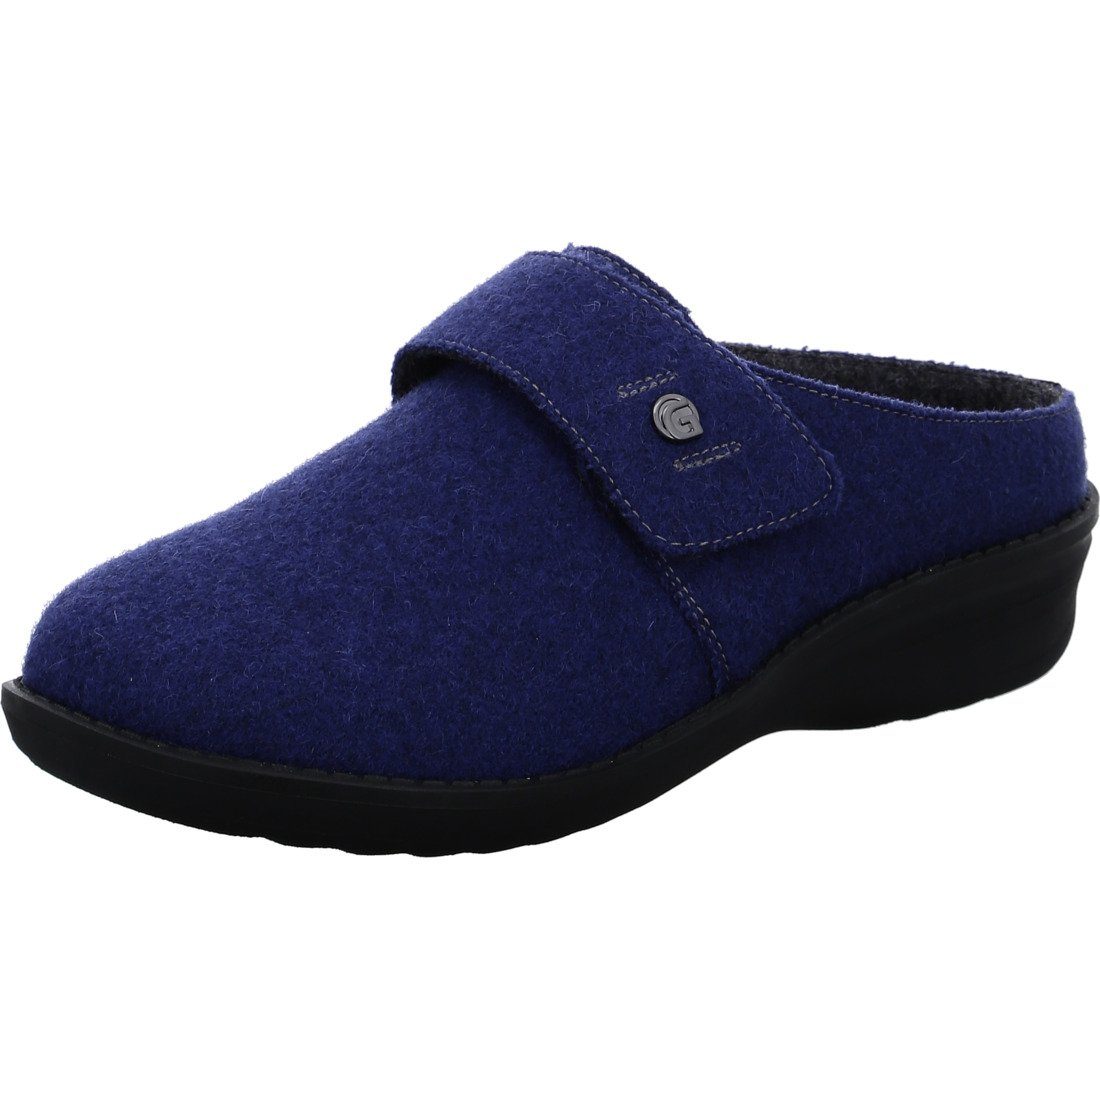 Pantolette - Merinowolle blau Hera Schuhe, Ganter 047615 Pantolette Ganter